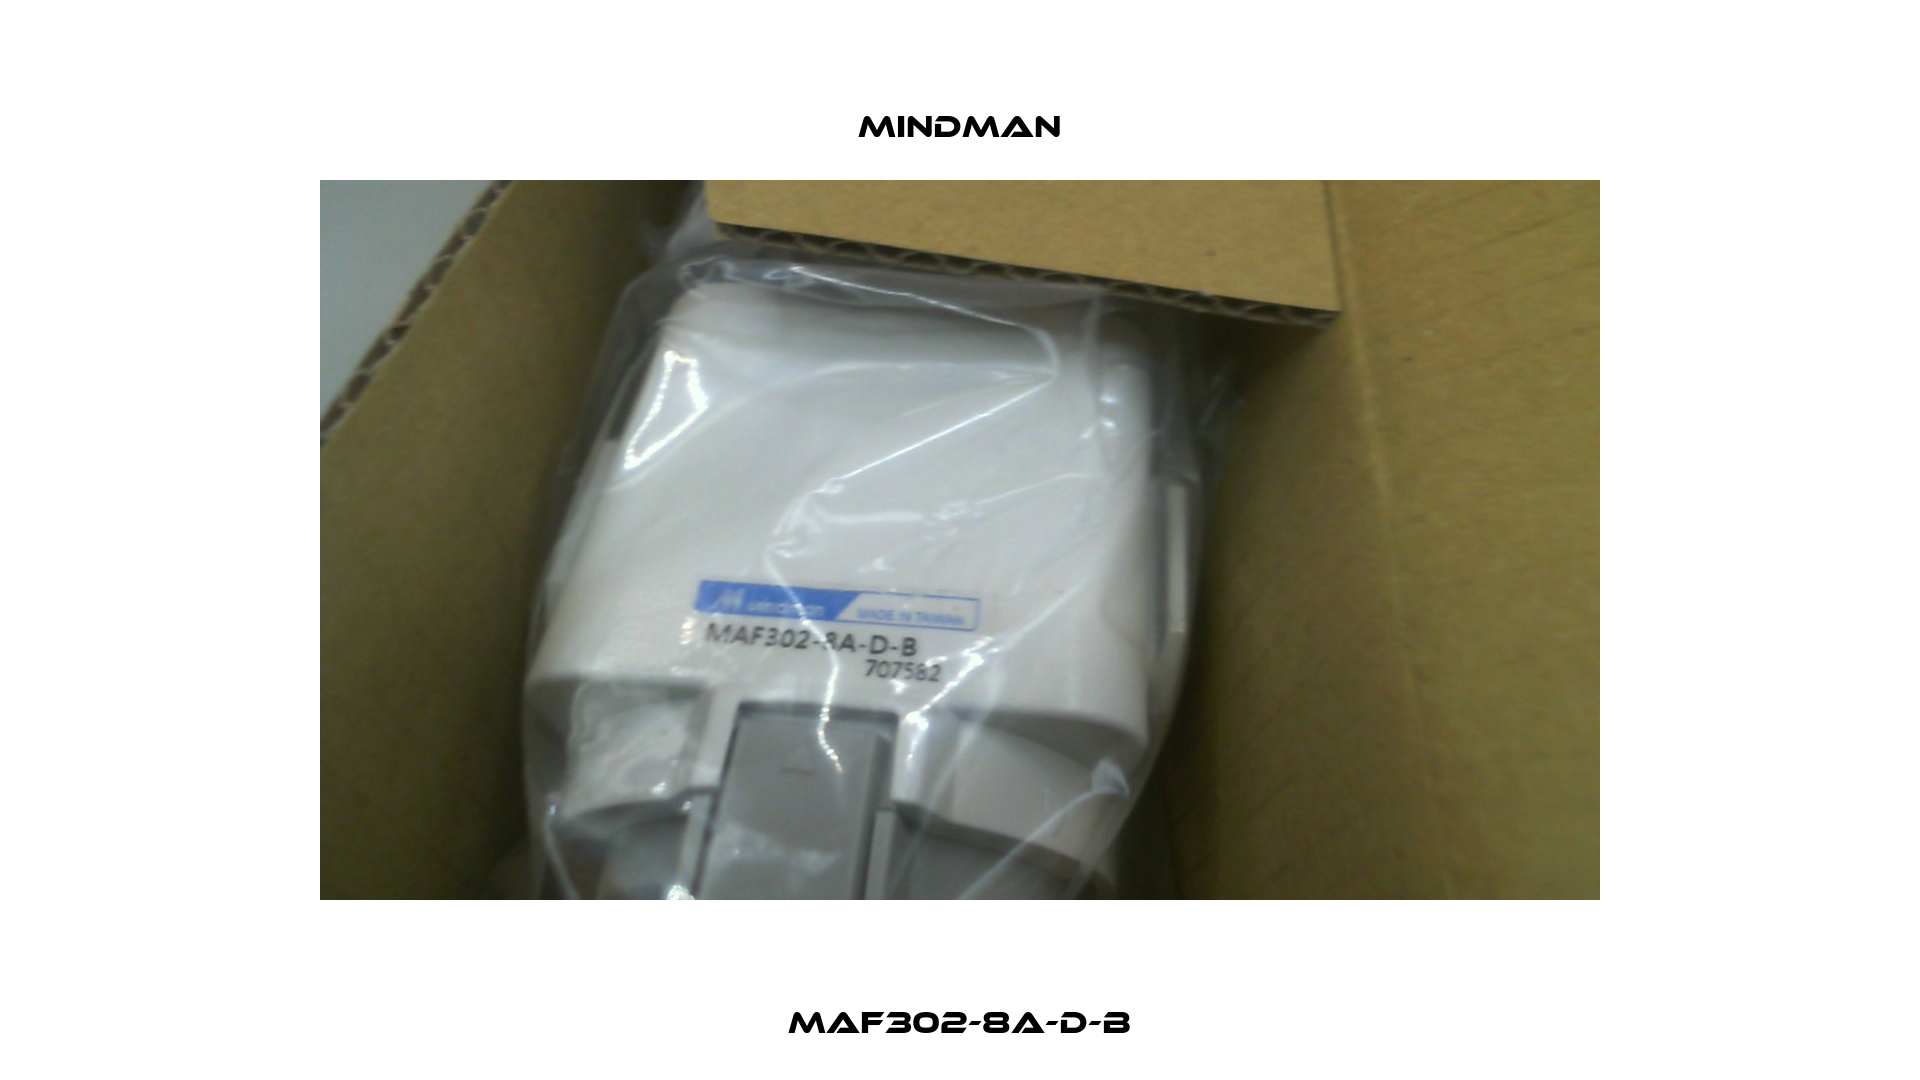 MAF302-8A-D-B Mindman